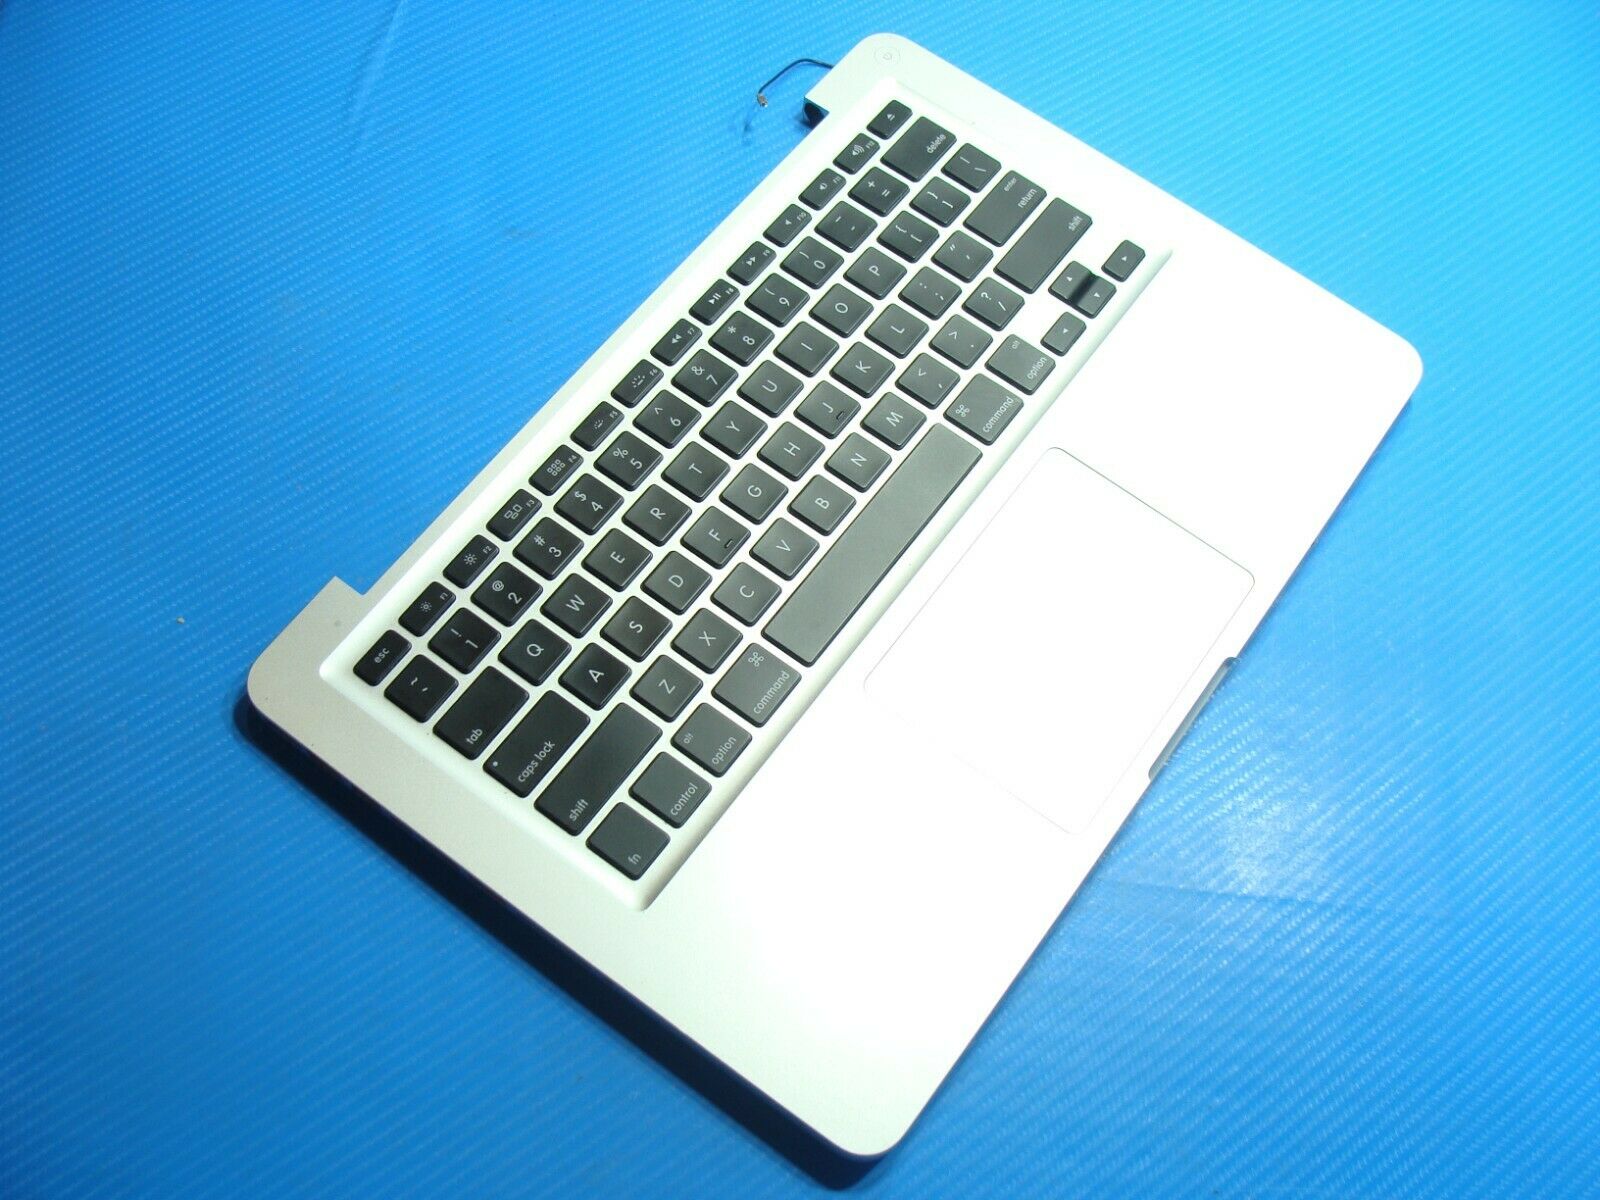 MacBook Pro A1278 MD313LL/A 2011 13